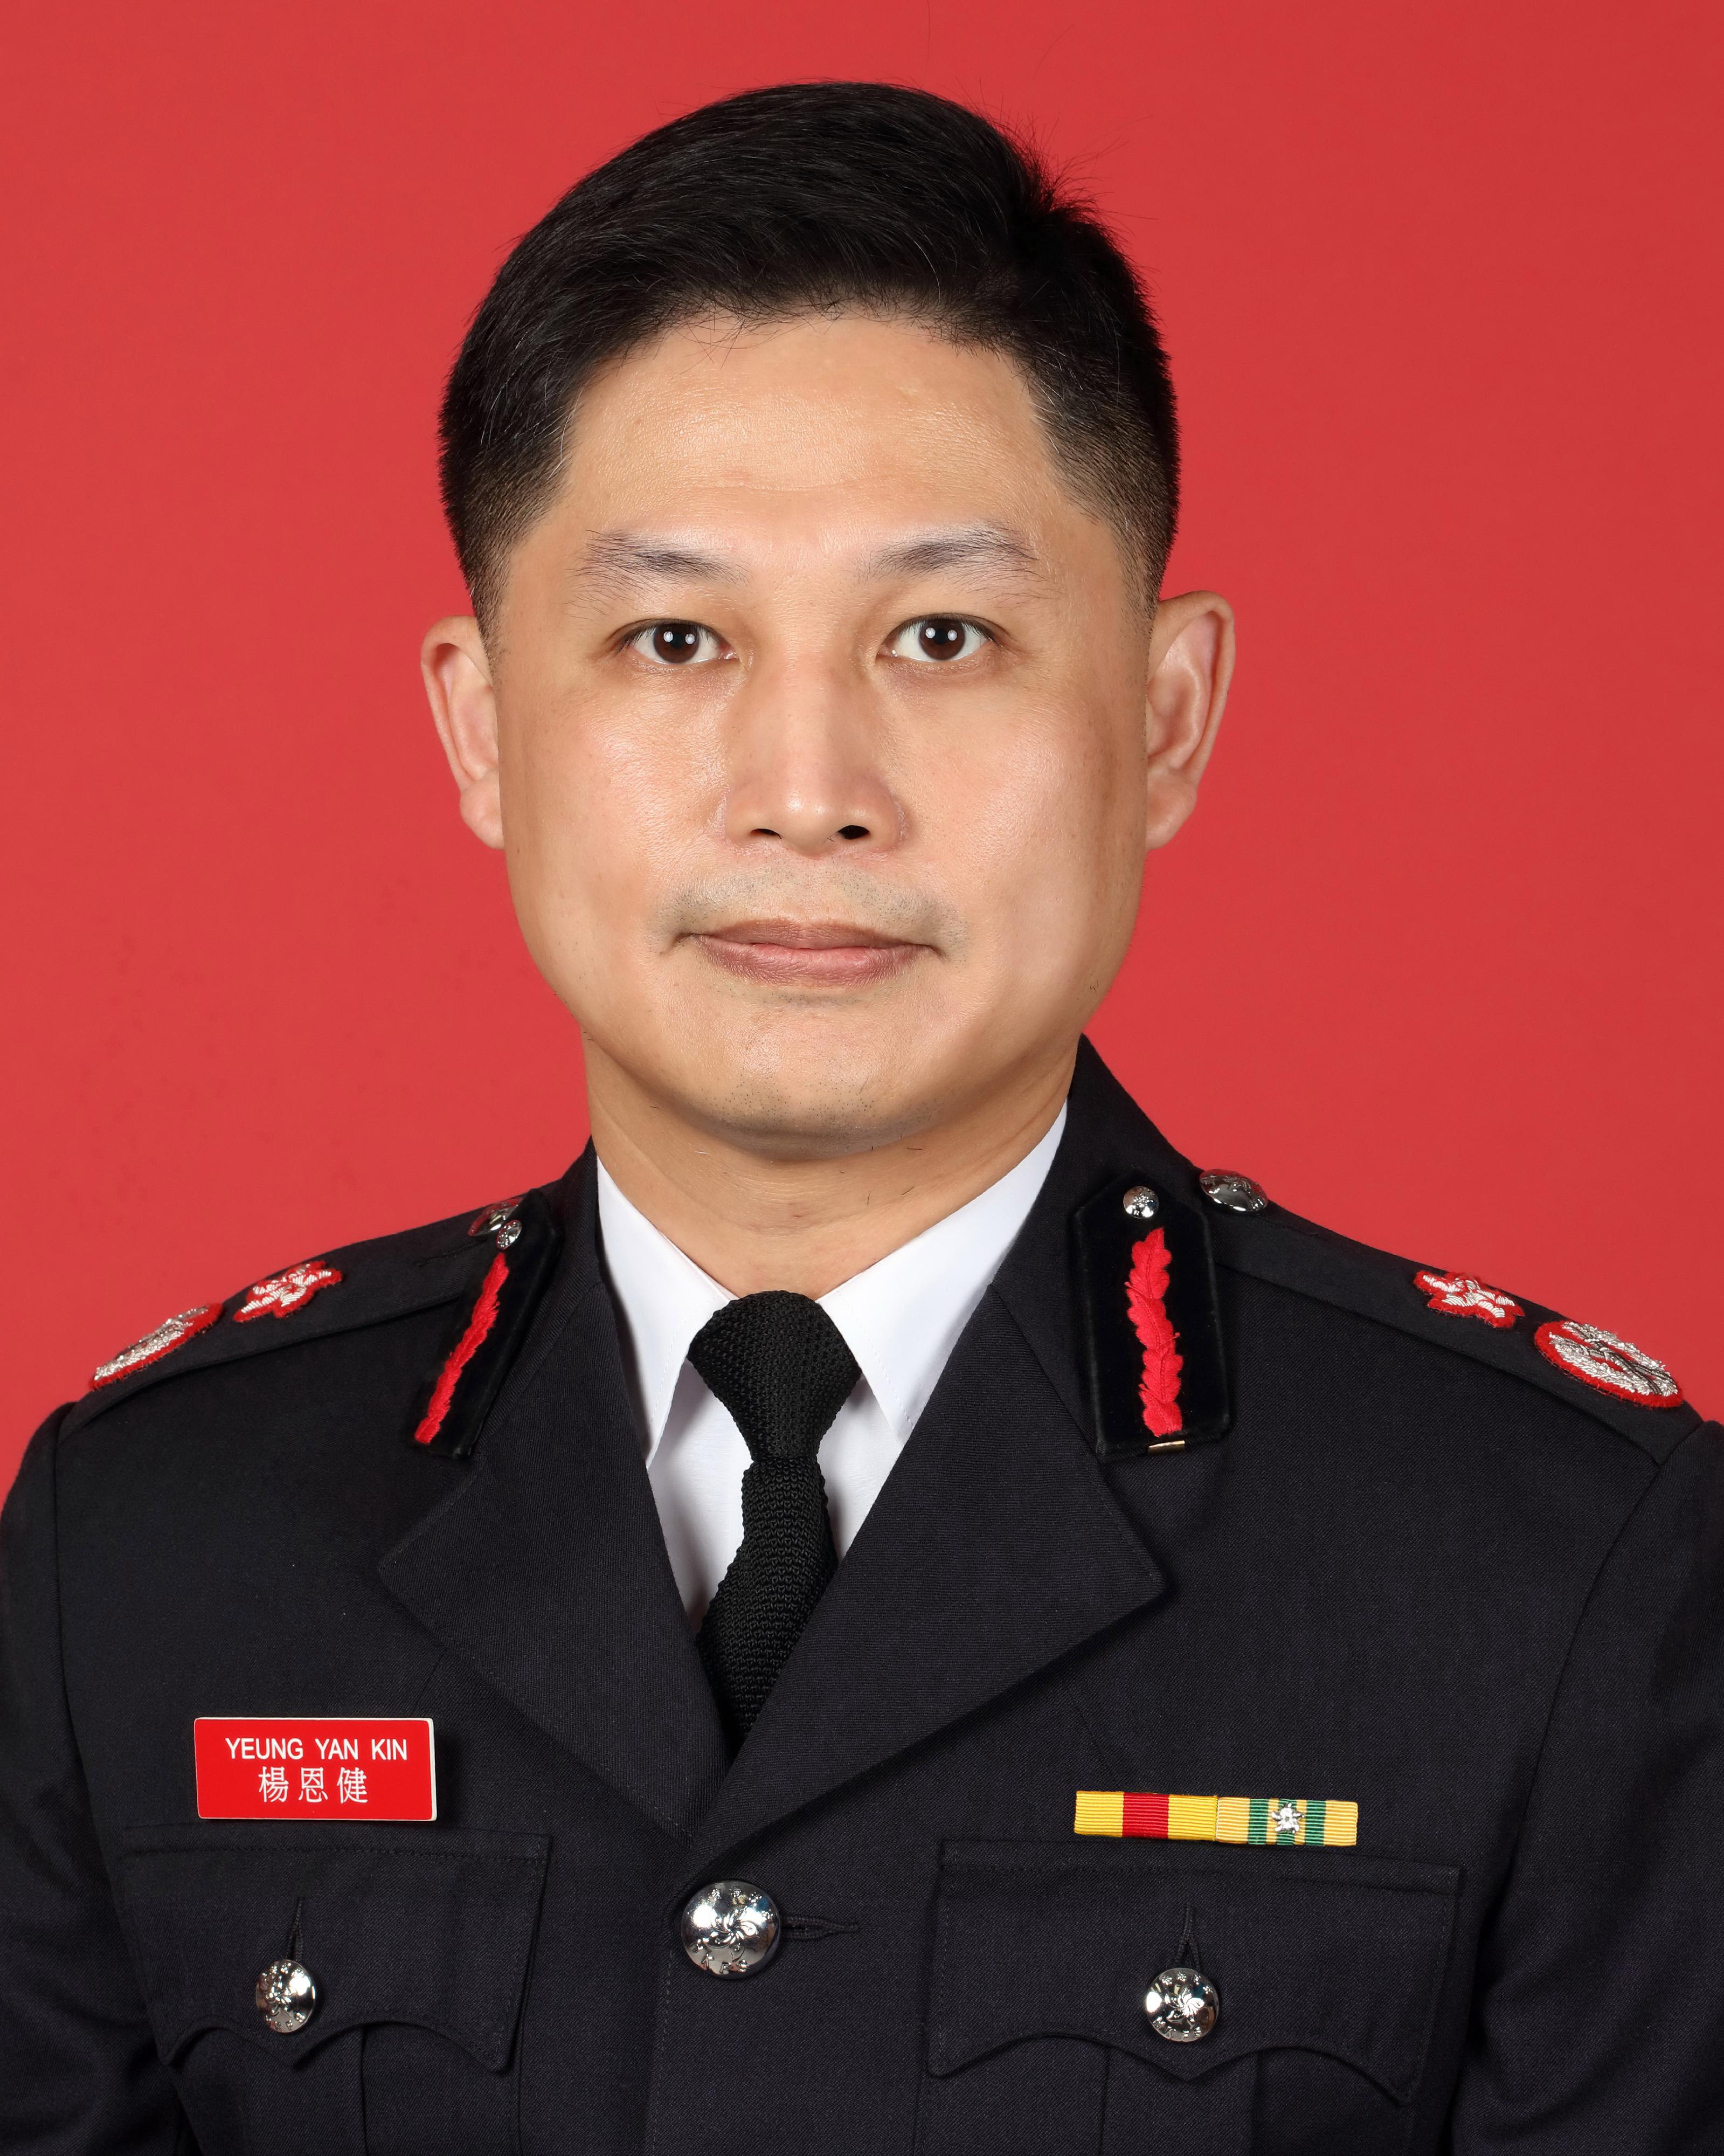 消防處副處長楊恩健將於二○二二年三月二十六日出任消防處處長。